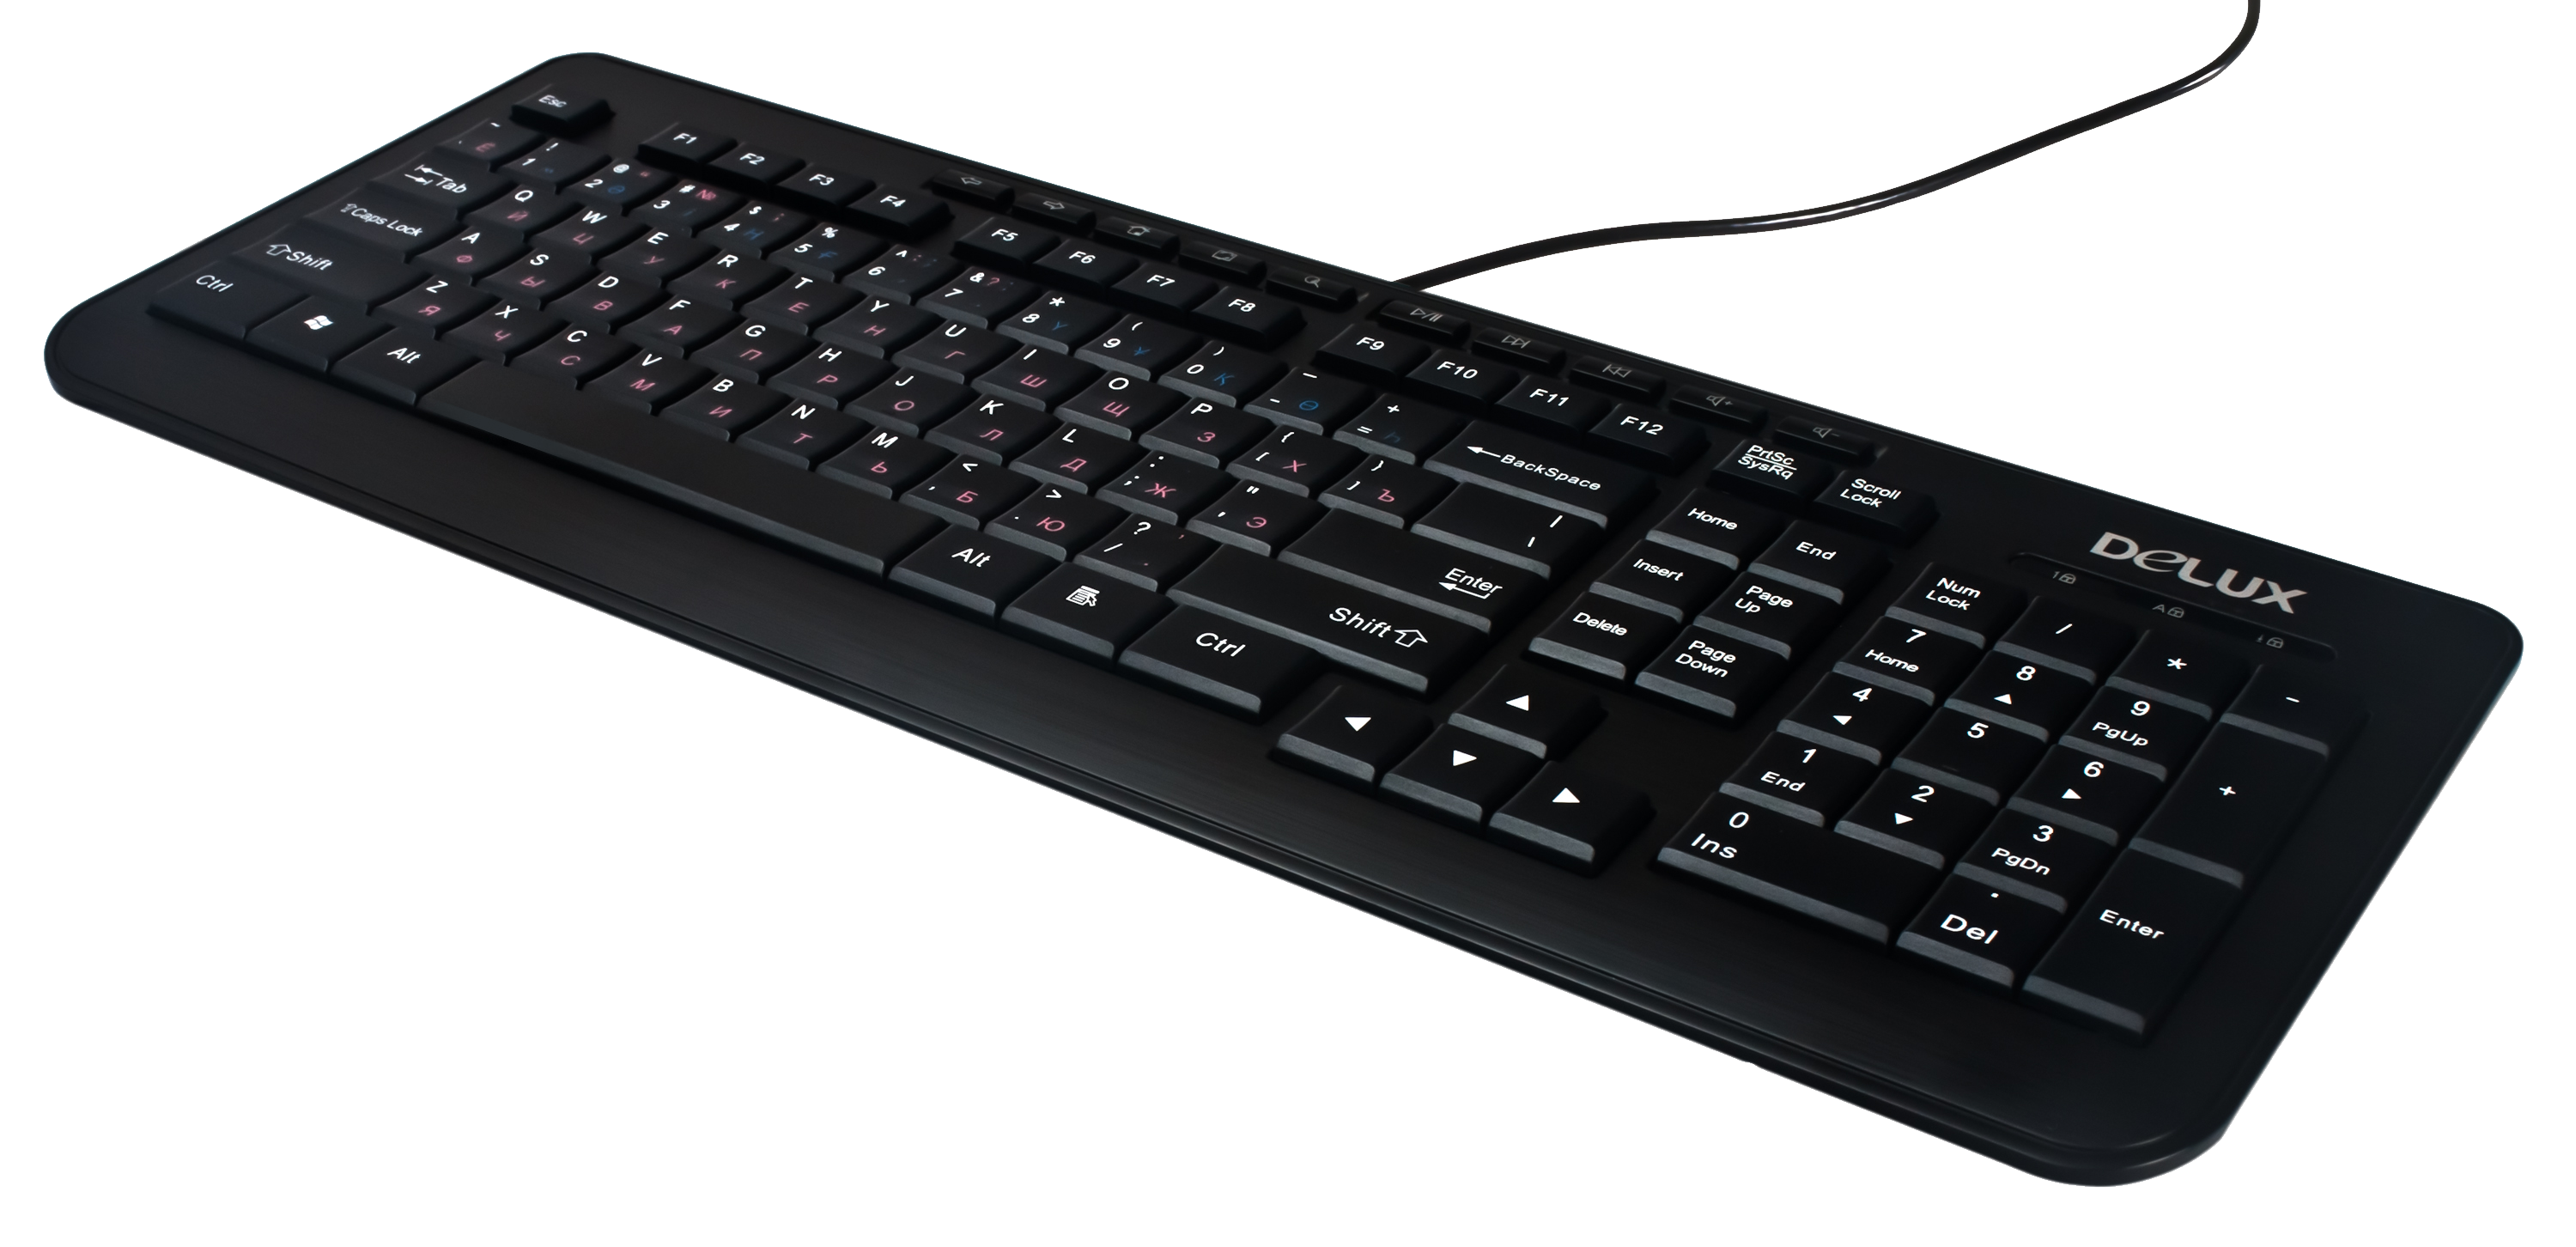 Black Keyboard PNG Image